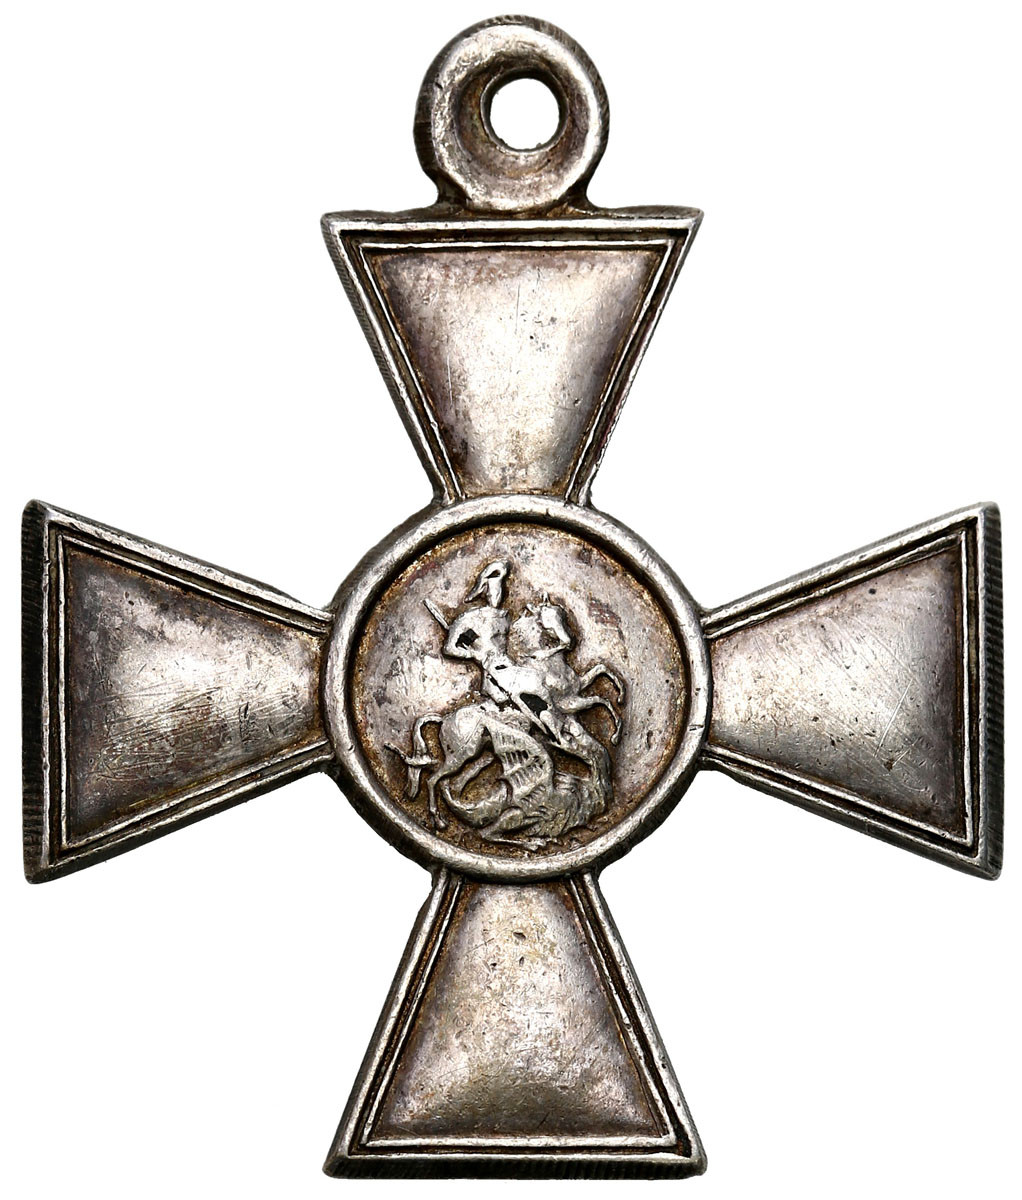 Rosja. Krzyż Orderu św. Jerzego 4 stopień, srebro – wykonanie późniejsze